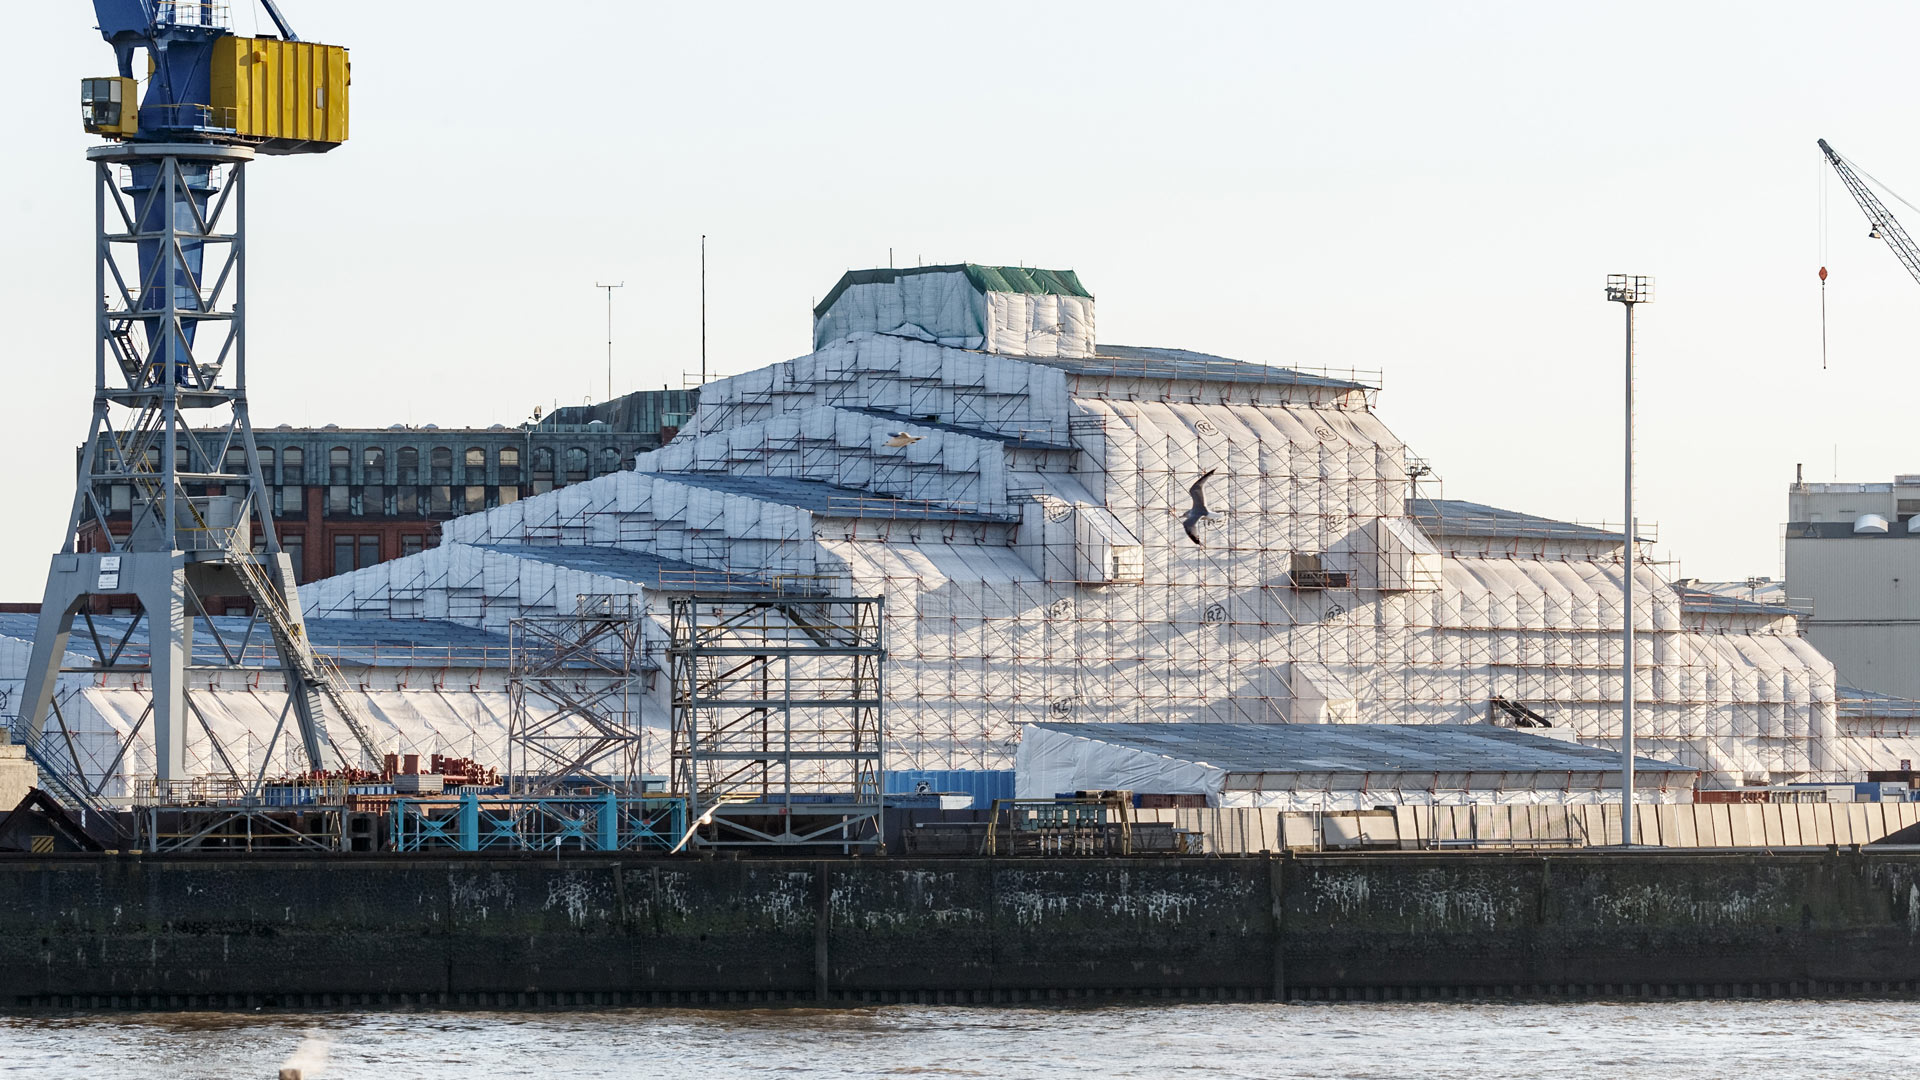 Die Yacht "Dilbar" des russischen Oligarchen Alisher Usmanov im Hamburger Hafen | picture alliance/dpa